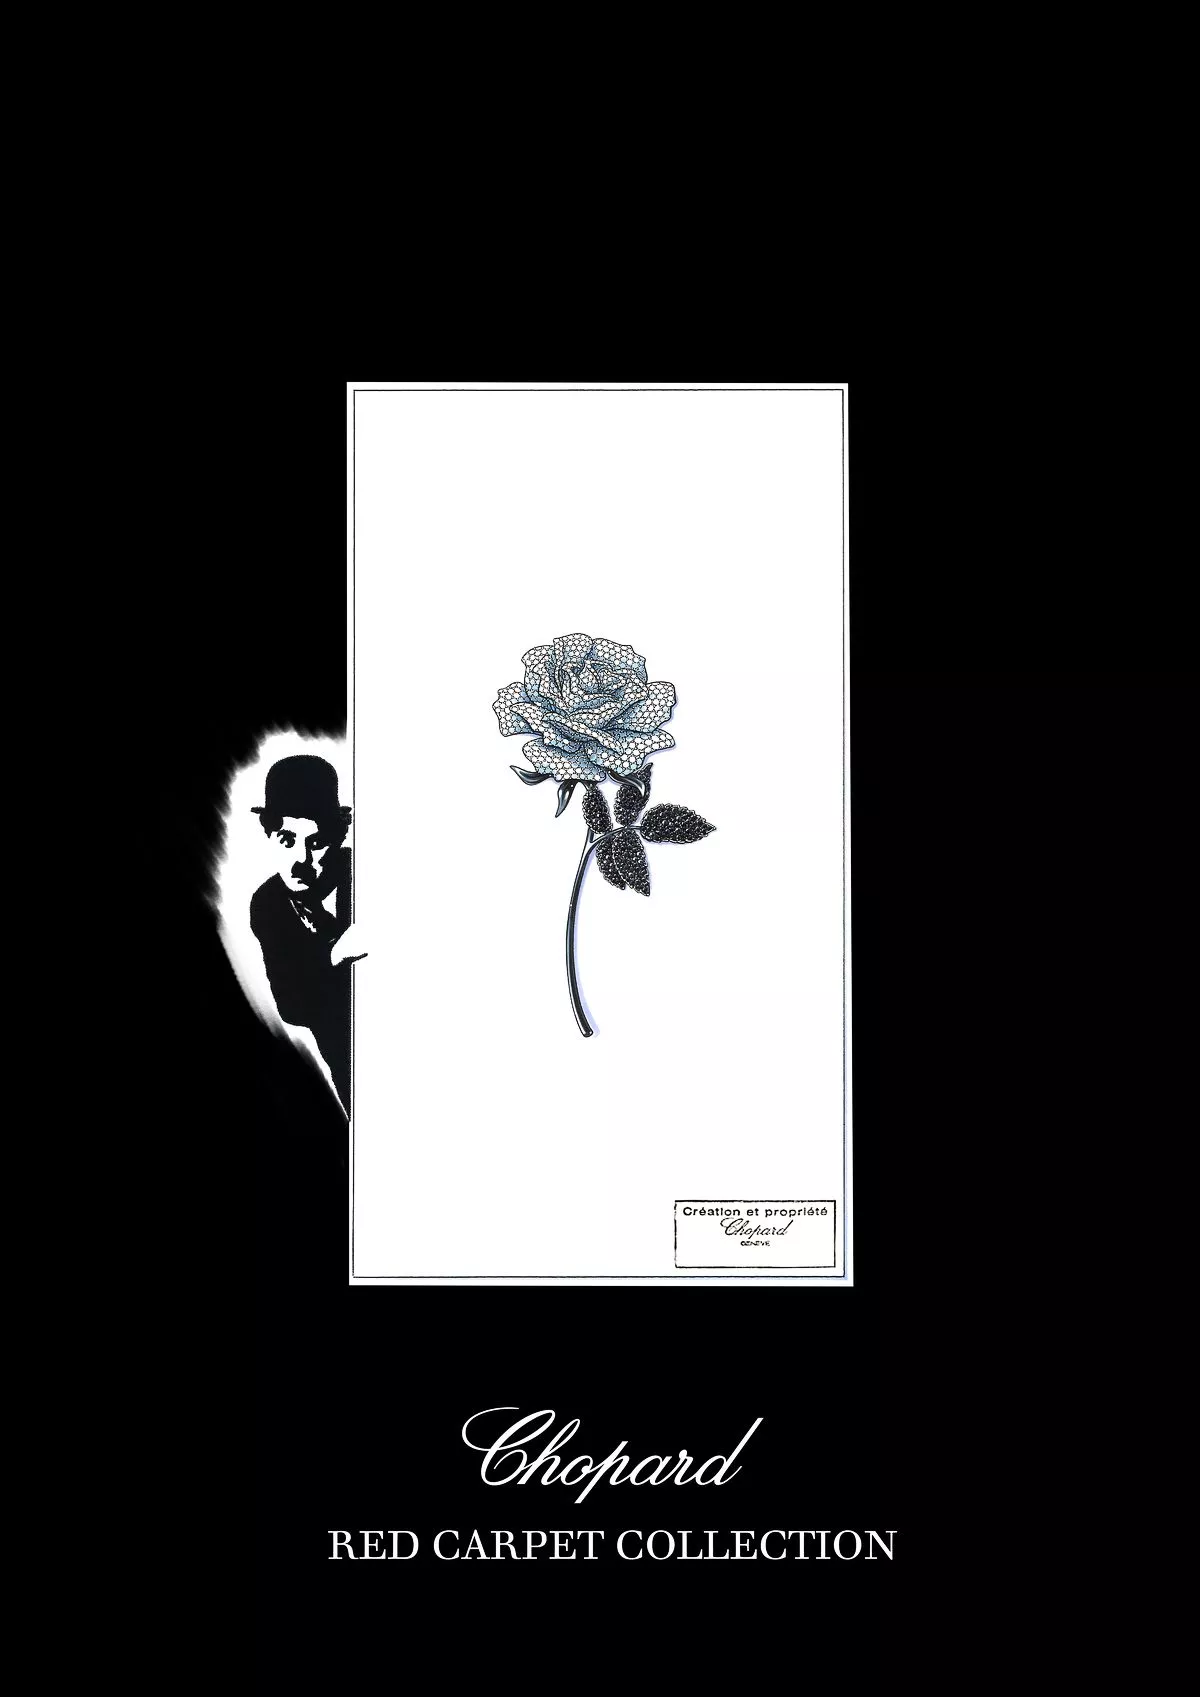 Бриллиантовая роза — предвестница коллекции Chopard Red Carpet 2022, фото 4